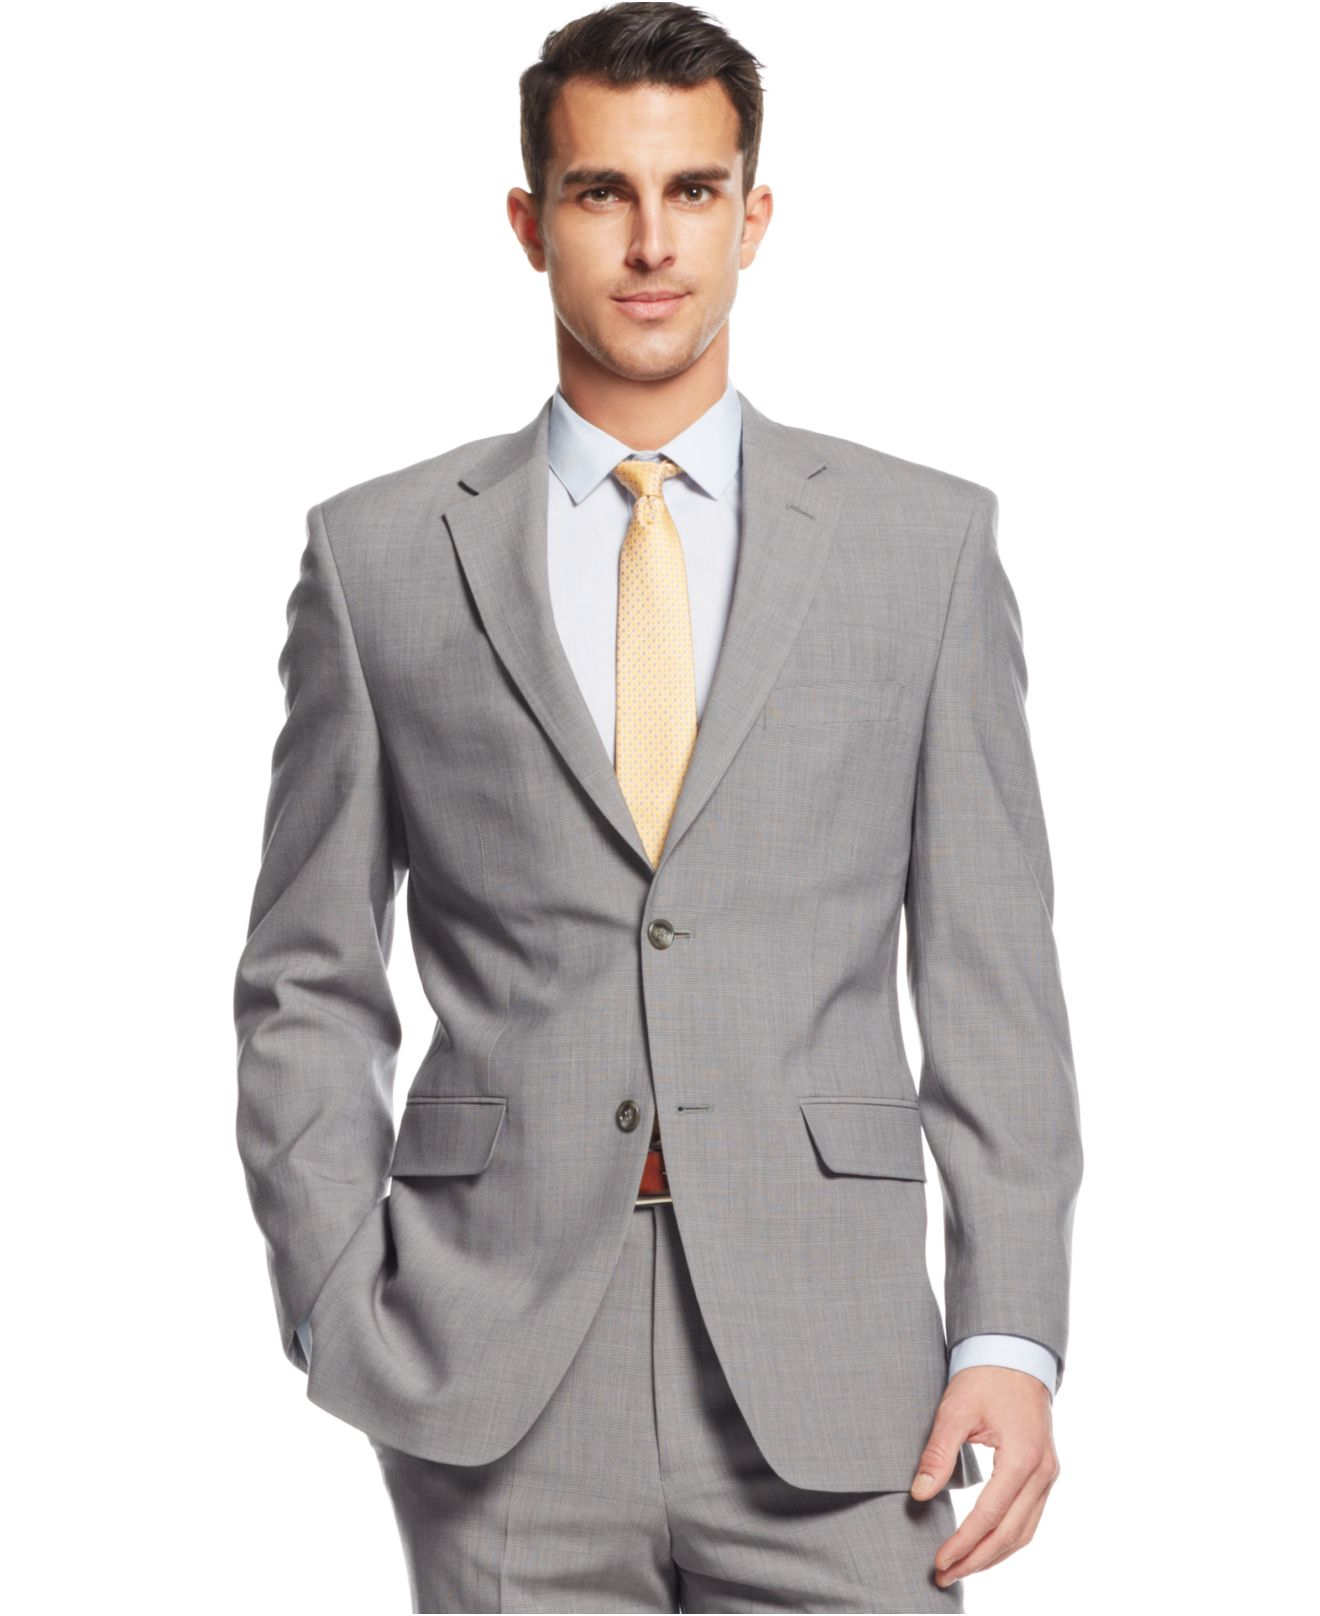 Men's Suits Jones New York : Jones New York Men's Size 42L 3 Button ...